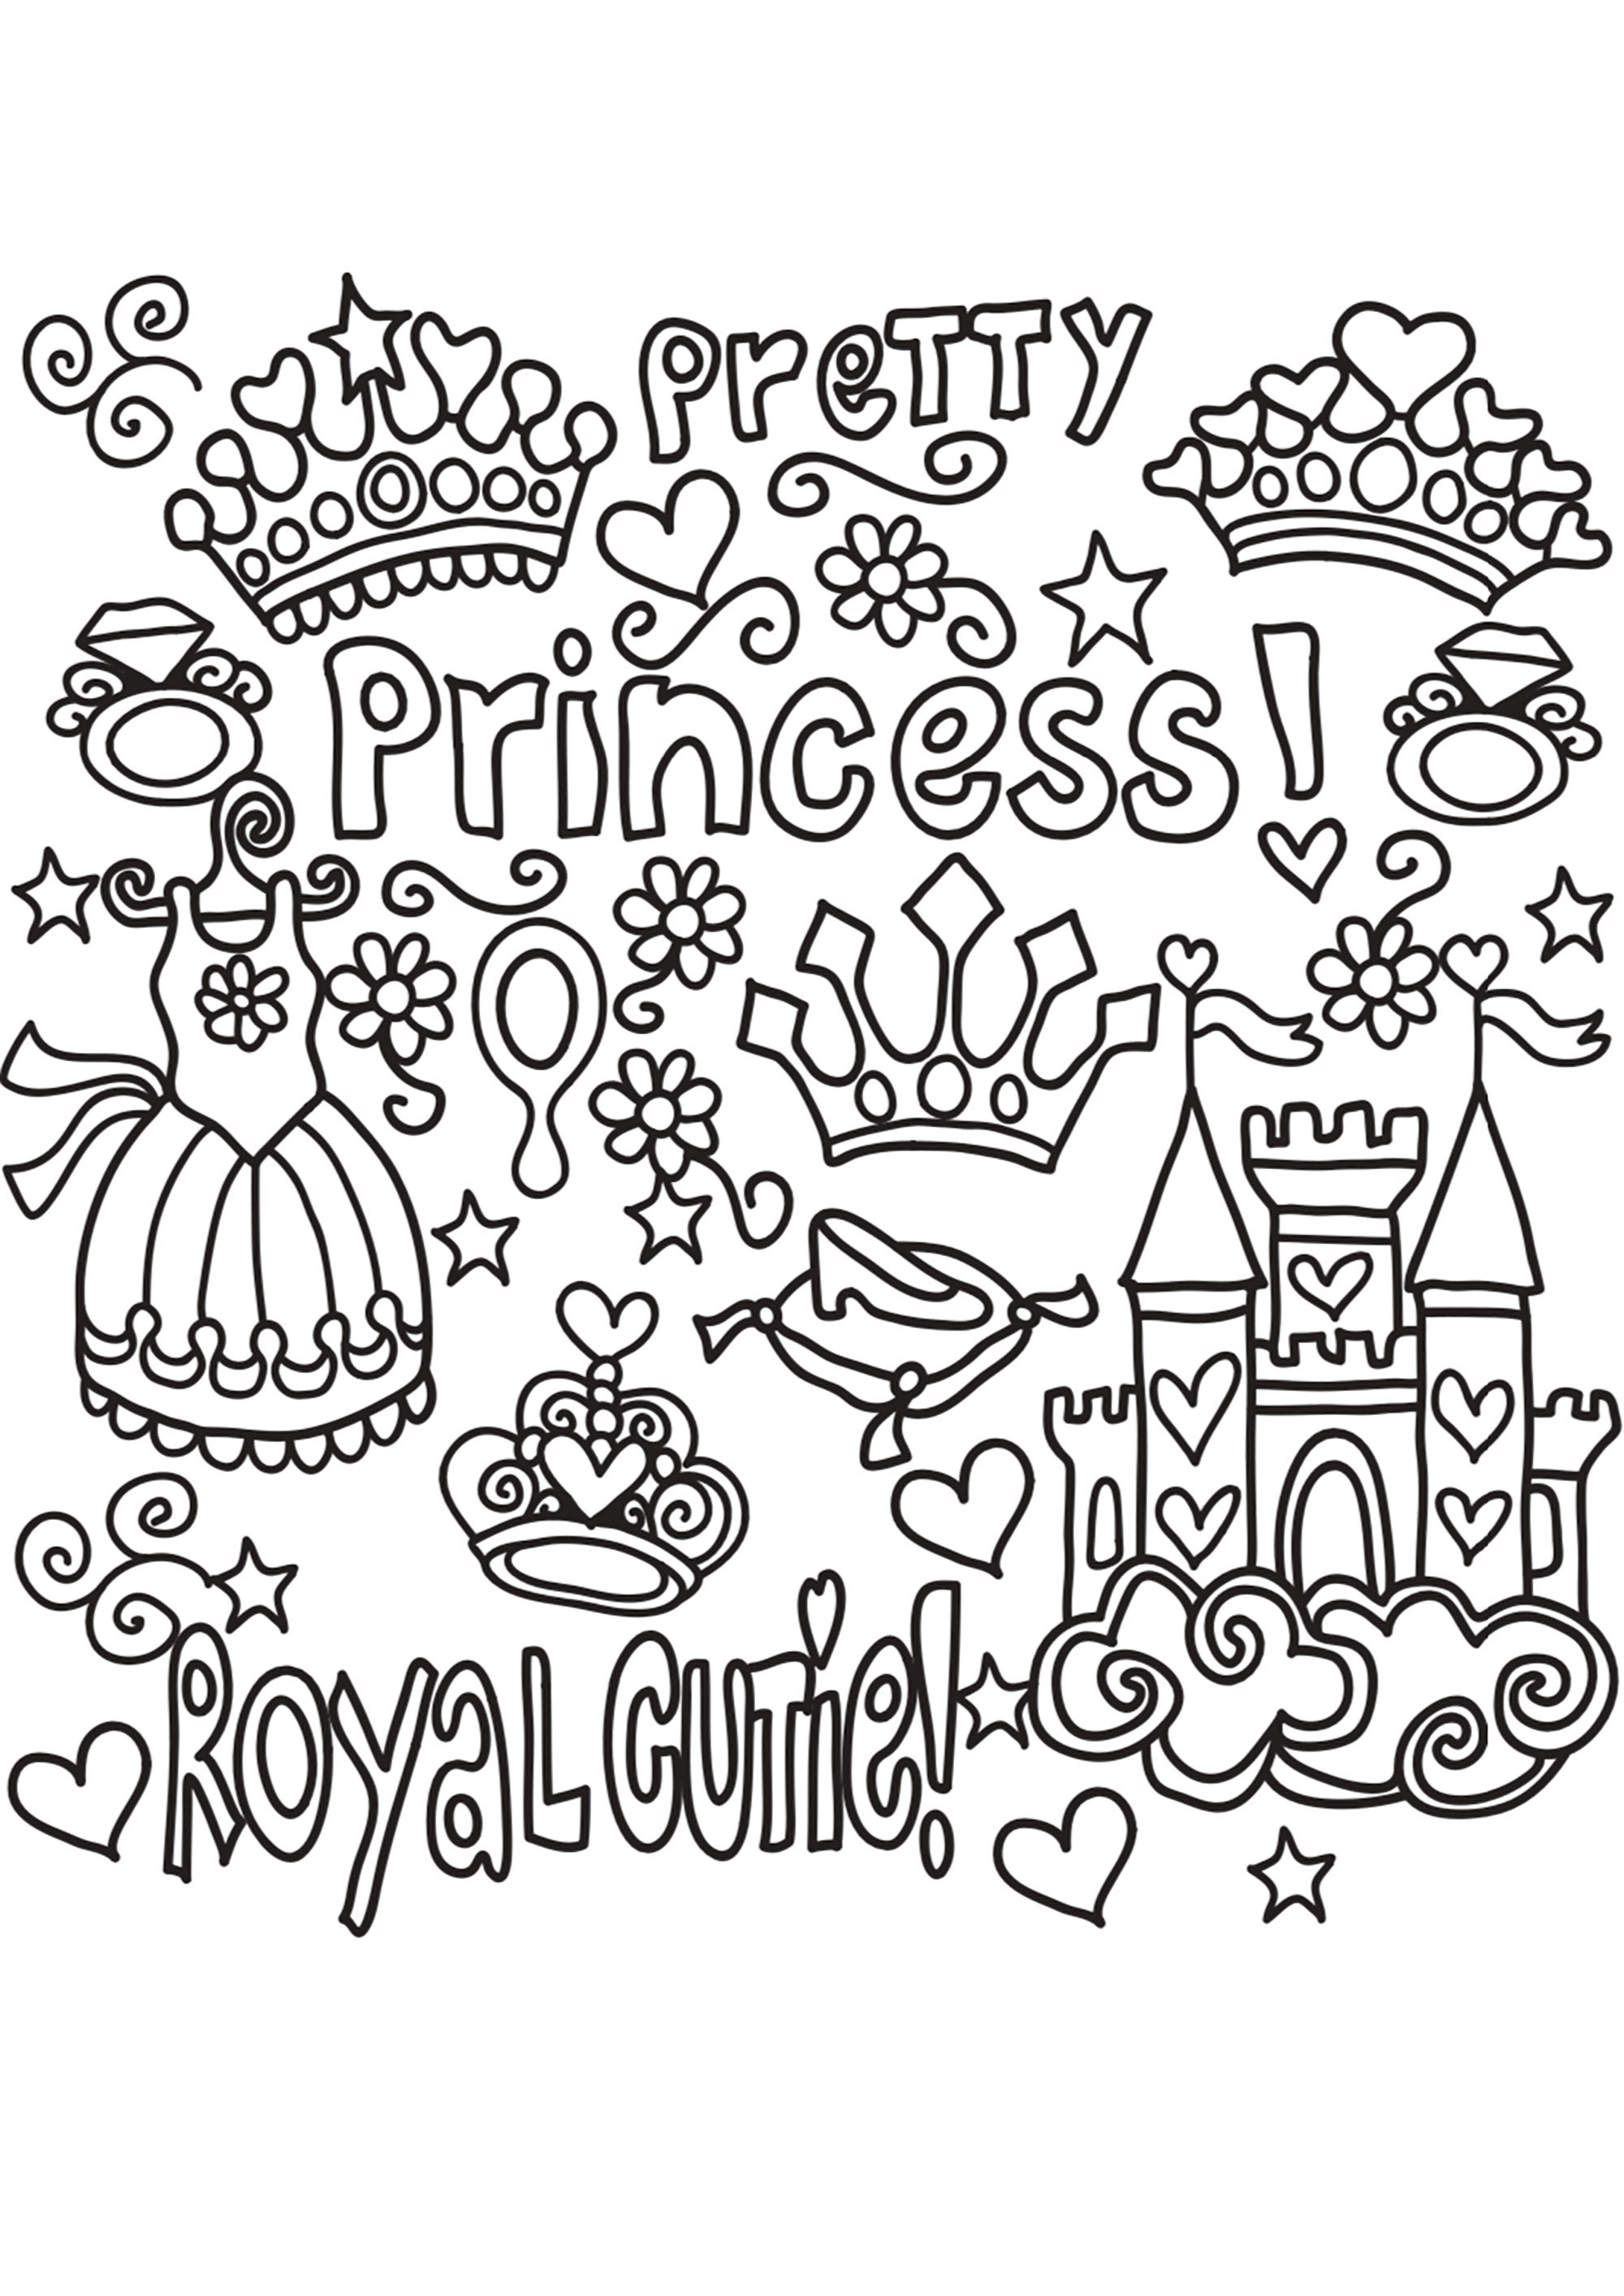 Un grazioso scarabocchio a tema principesco. Un vestito da principessa, un diadema, una corona, un castello... e belle parole... tutto per portarvi in un regno incantato.